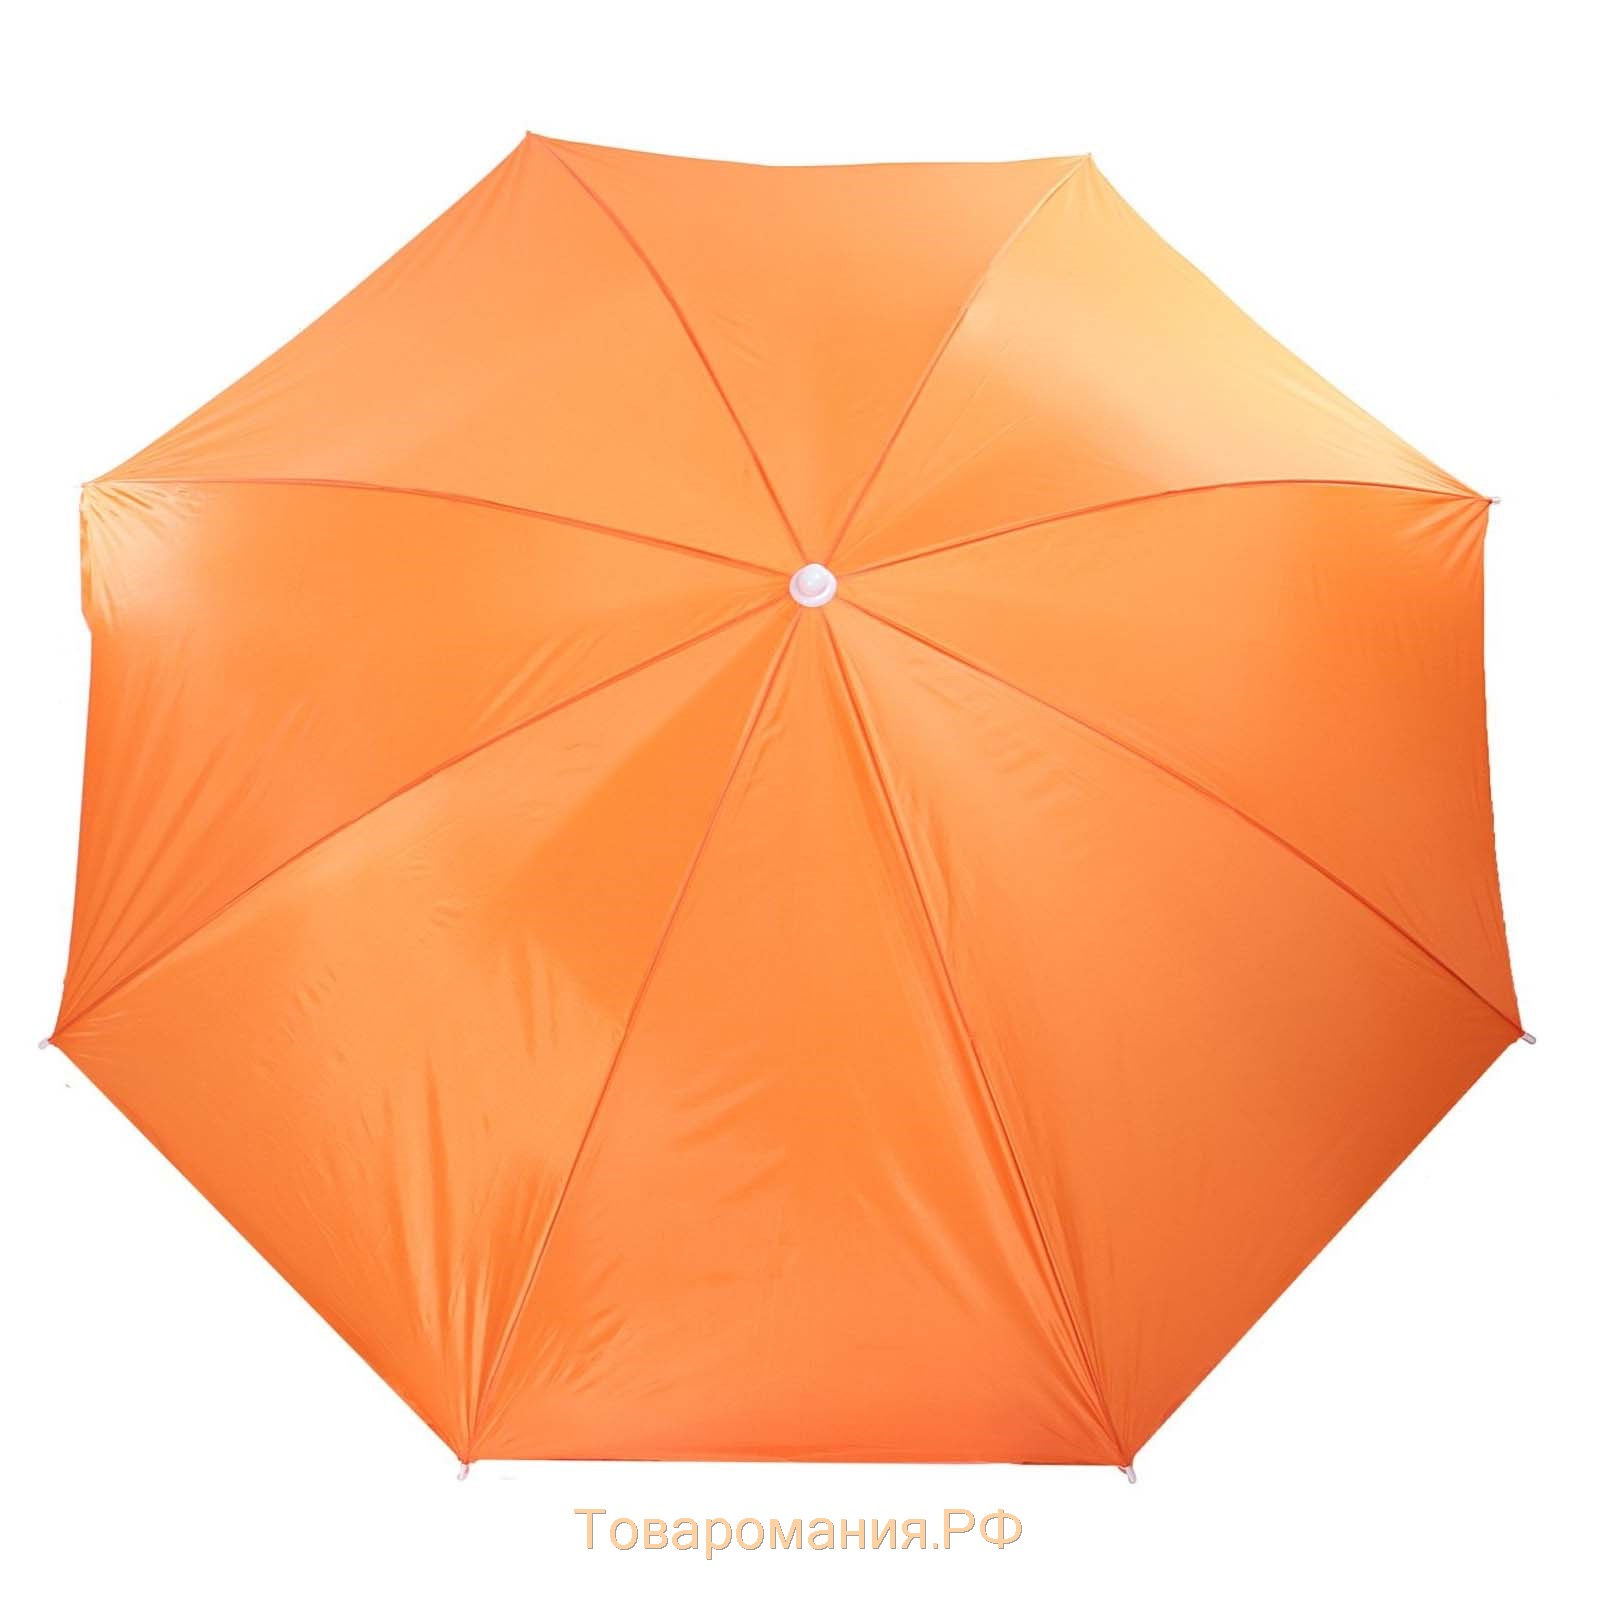 Зонт пляжный Maclay «Классика», d=240 cм, h=220 см, цвет МИКС